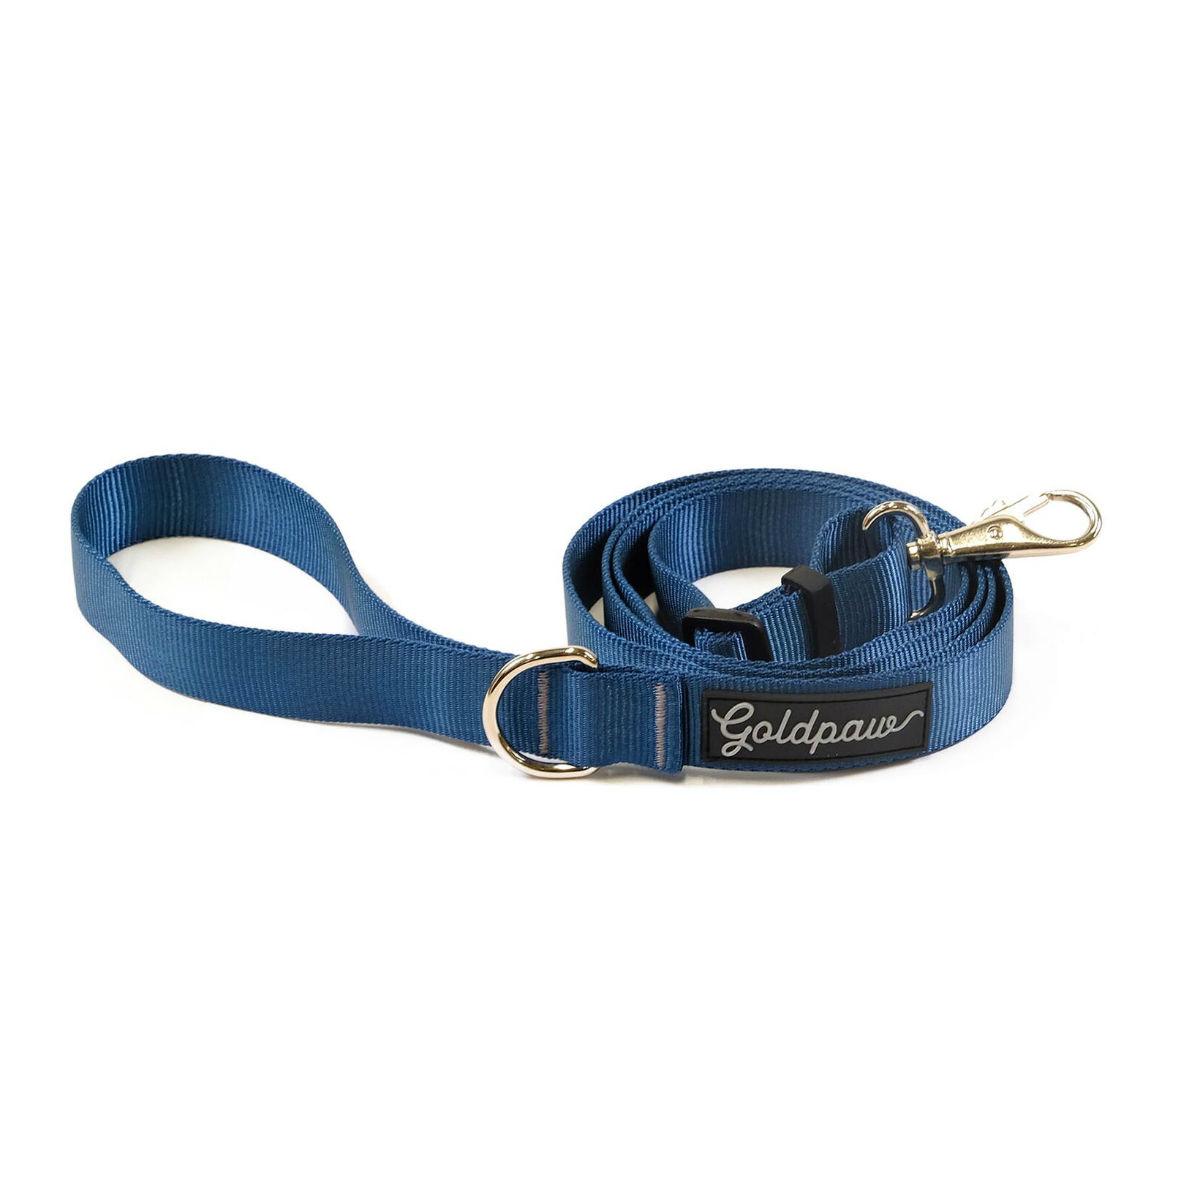 Gold Paw Adjustable Length Dog Leash - Marine Blue